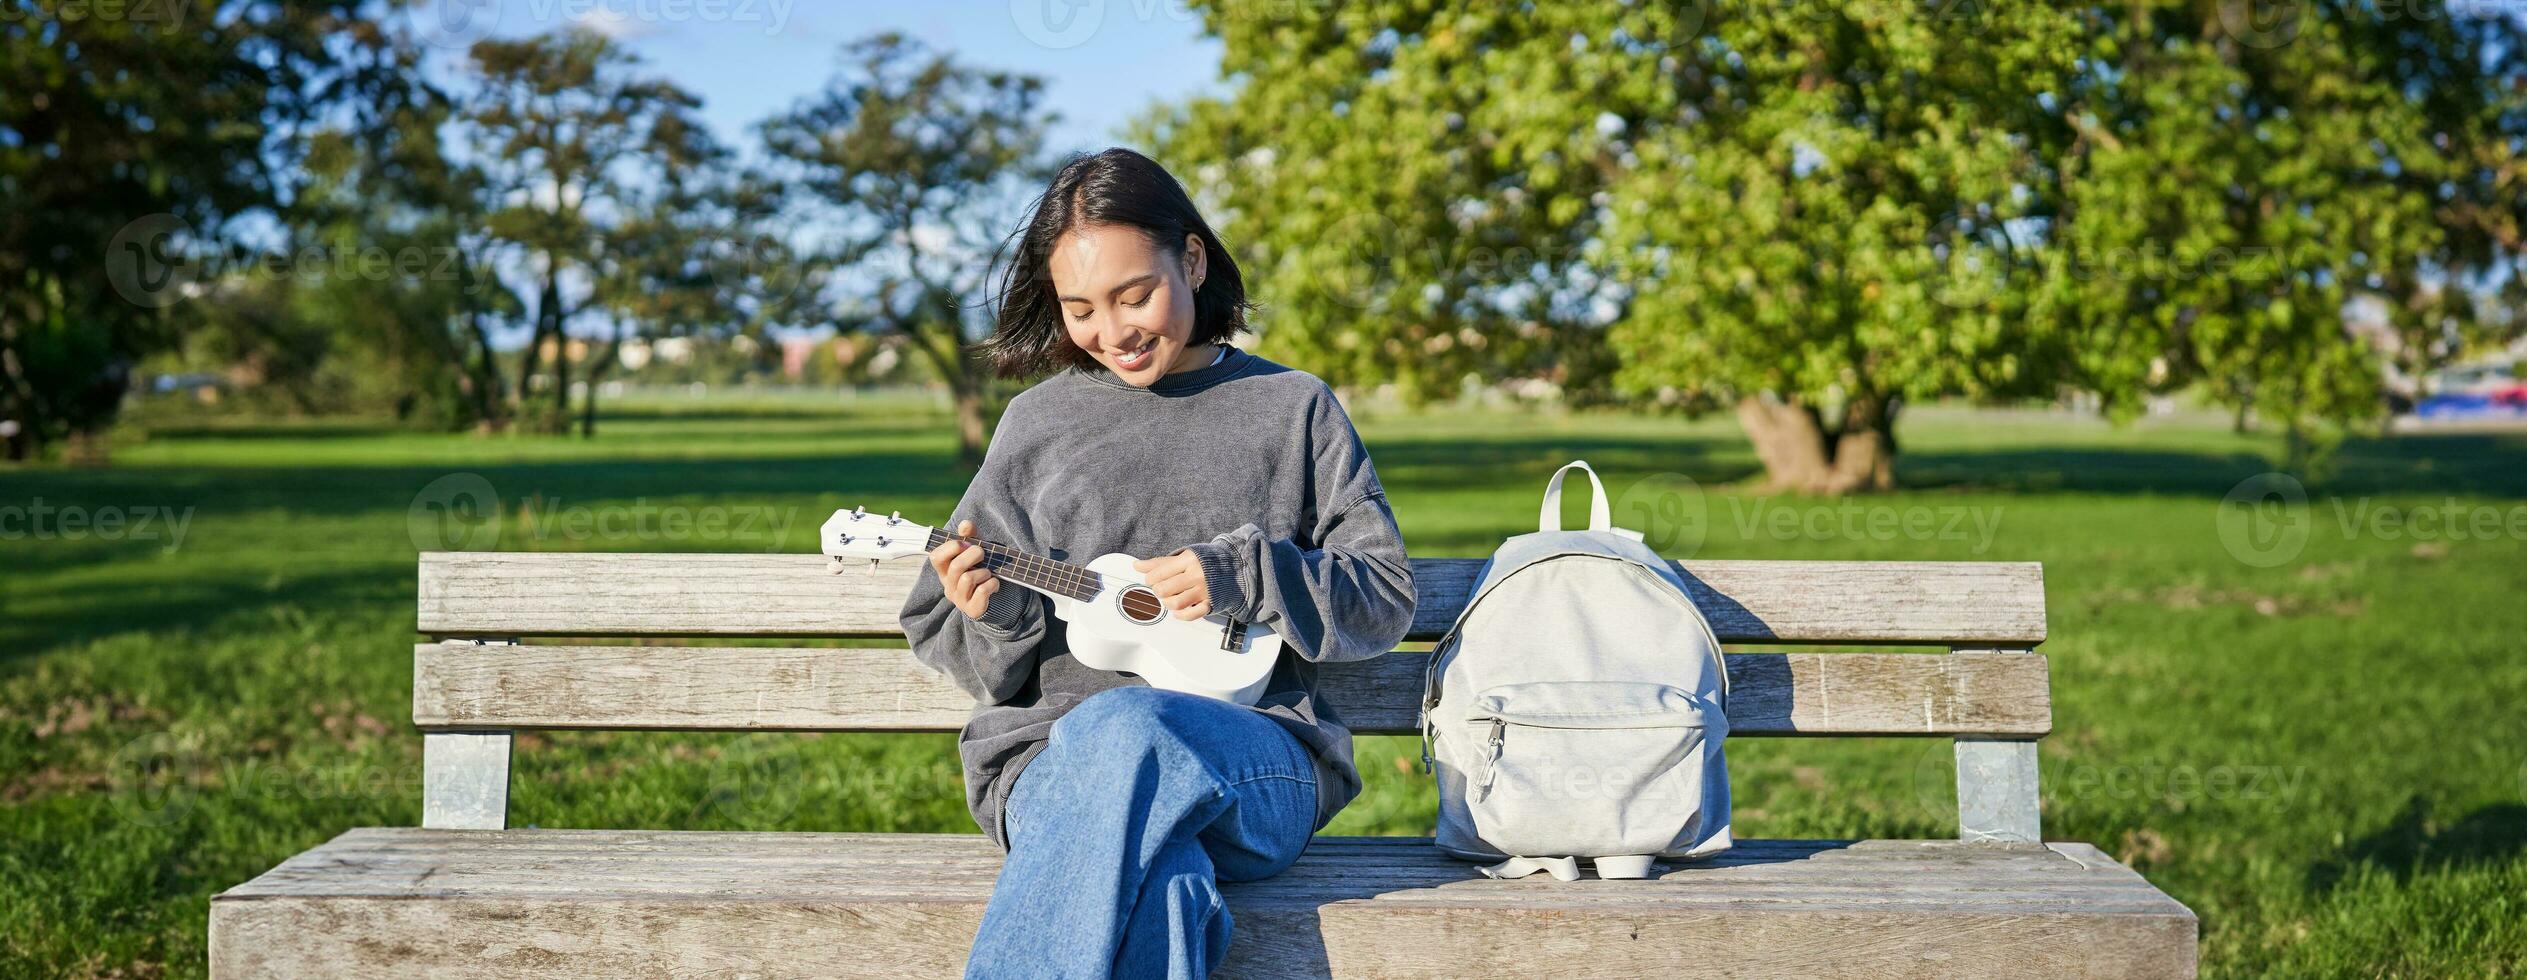 magnifique asiatique fille pièces ukulélé en plein air, est assis dans parc sur banc avec musical instrument photo